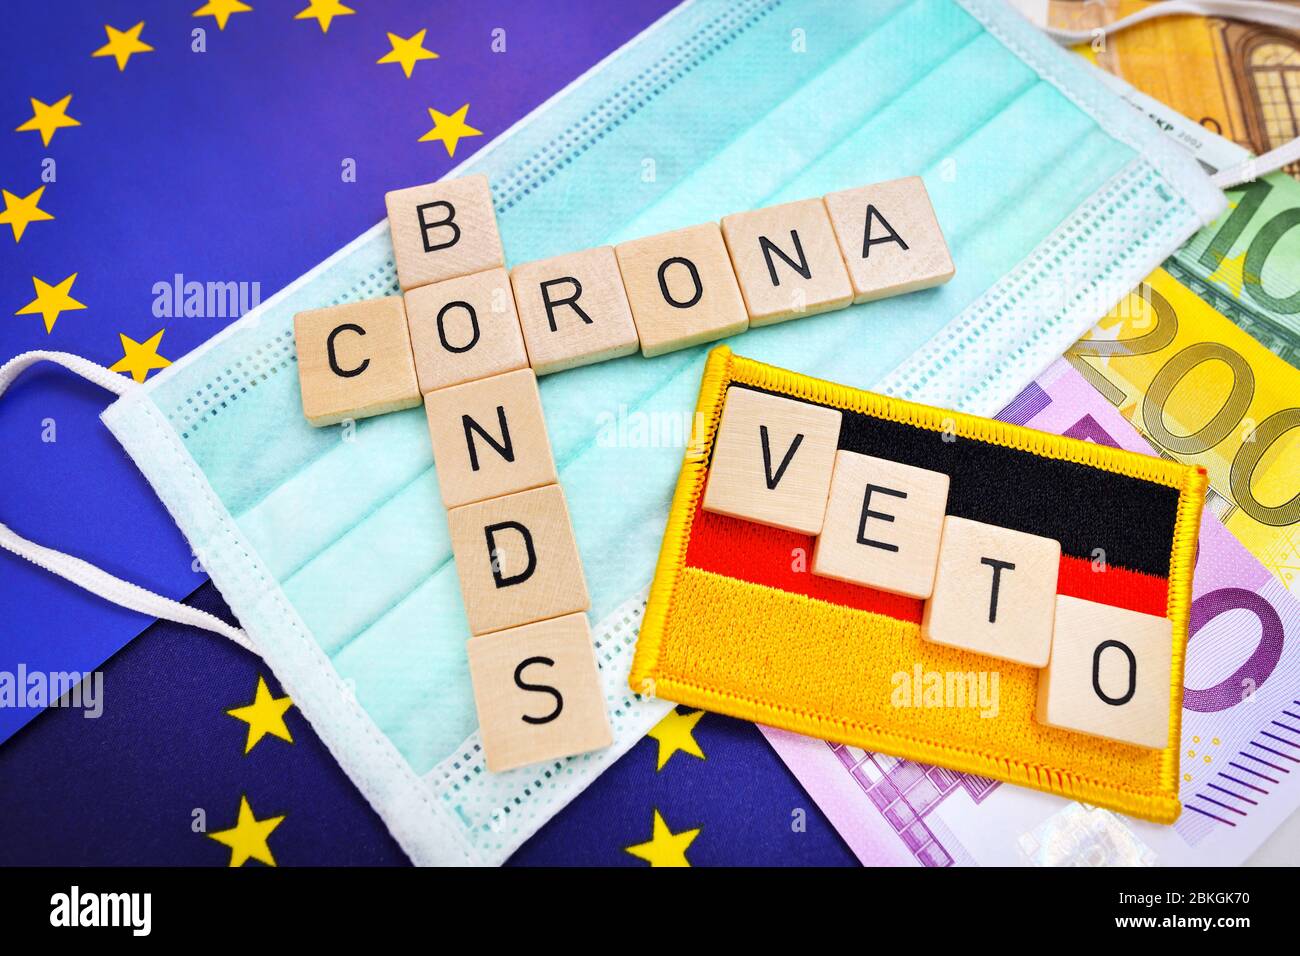 Letras que deletrean la palabra corona Bonds en una máscara y bandera de la UE bandera de Alemania con la palabra veto / Buchstaben bilden Schriftzug Corona-Bonds auf Mun Foto de stock